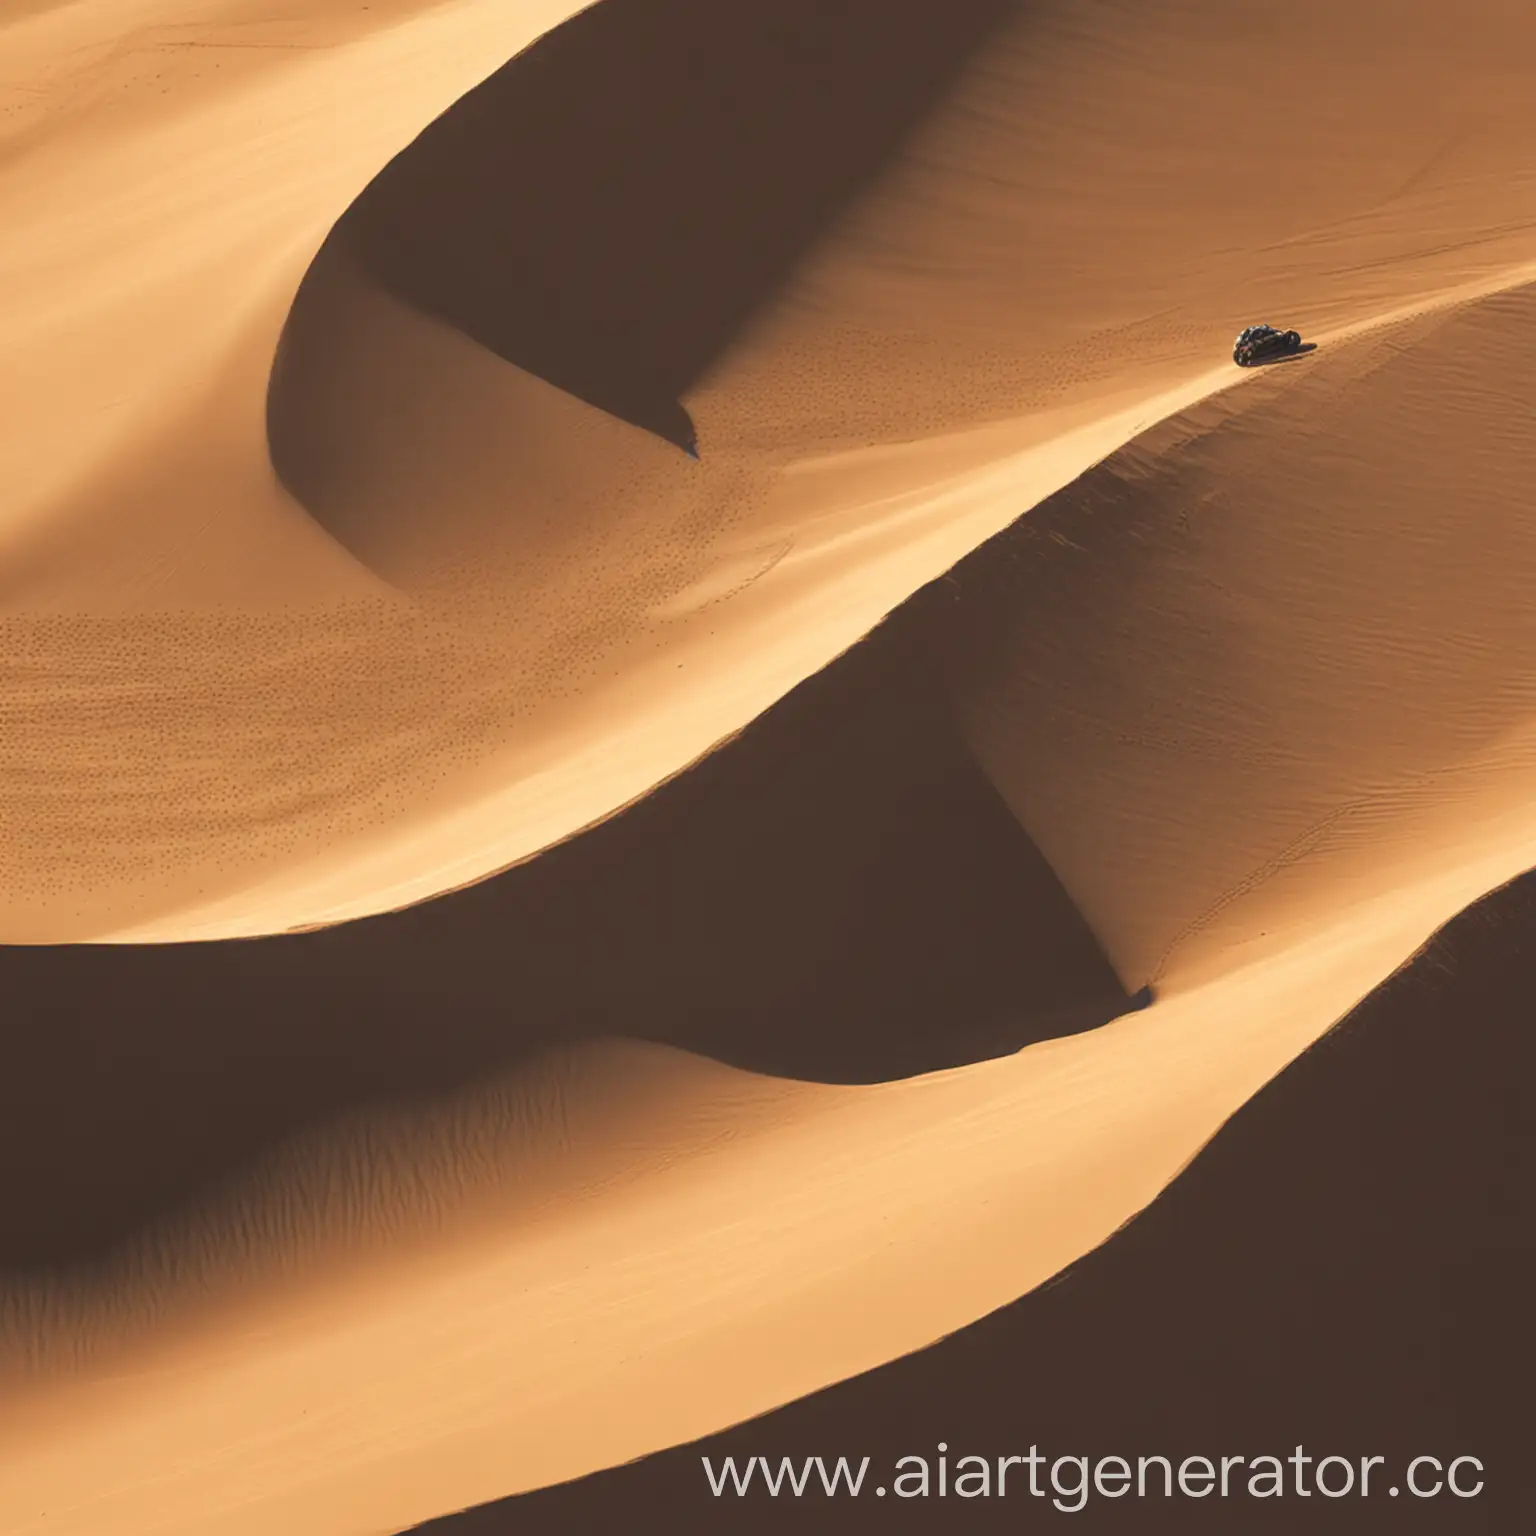 Thrilling-Desert-Dune-Racing-HighSpeed-Adventure-in-2D